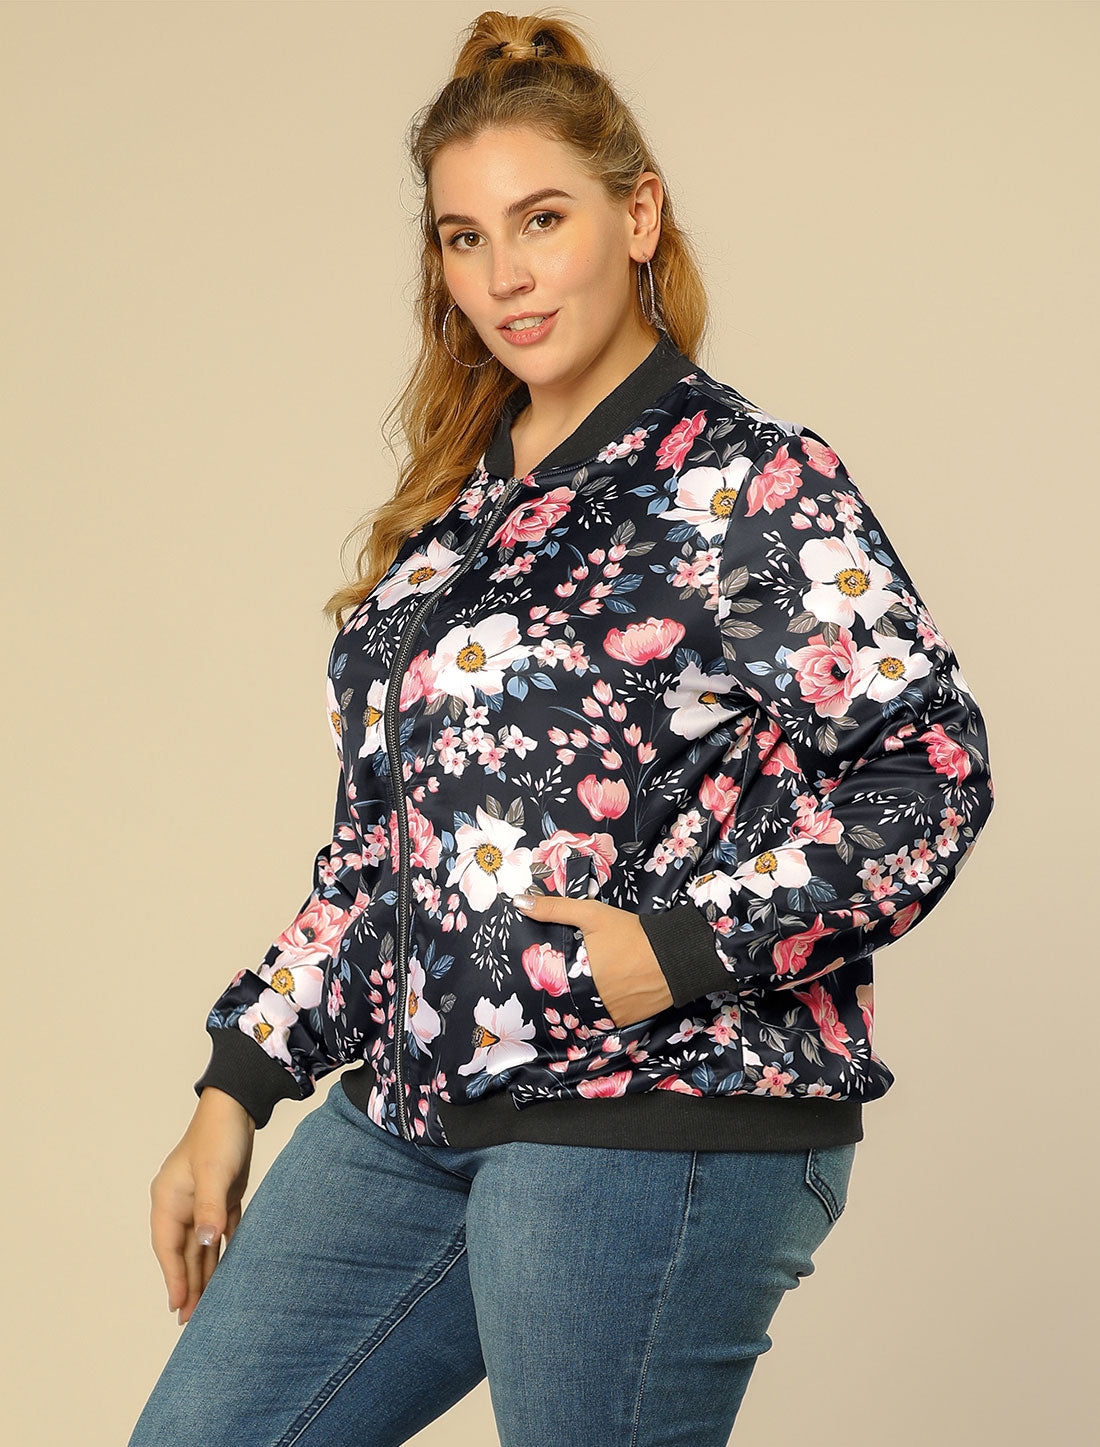 Bublédon Plus Size Zipper Jackets Long Sleeves Floral Bomber Jacket